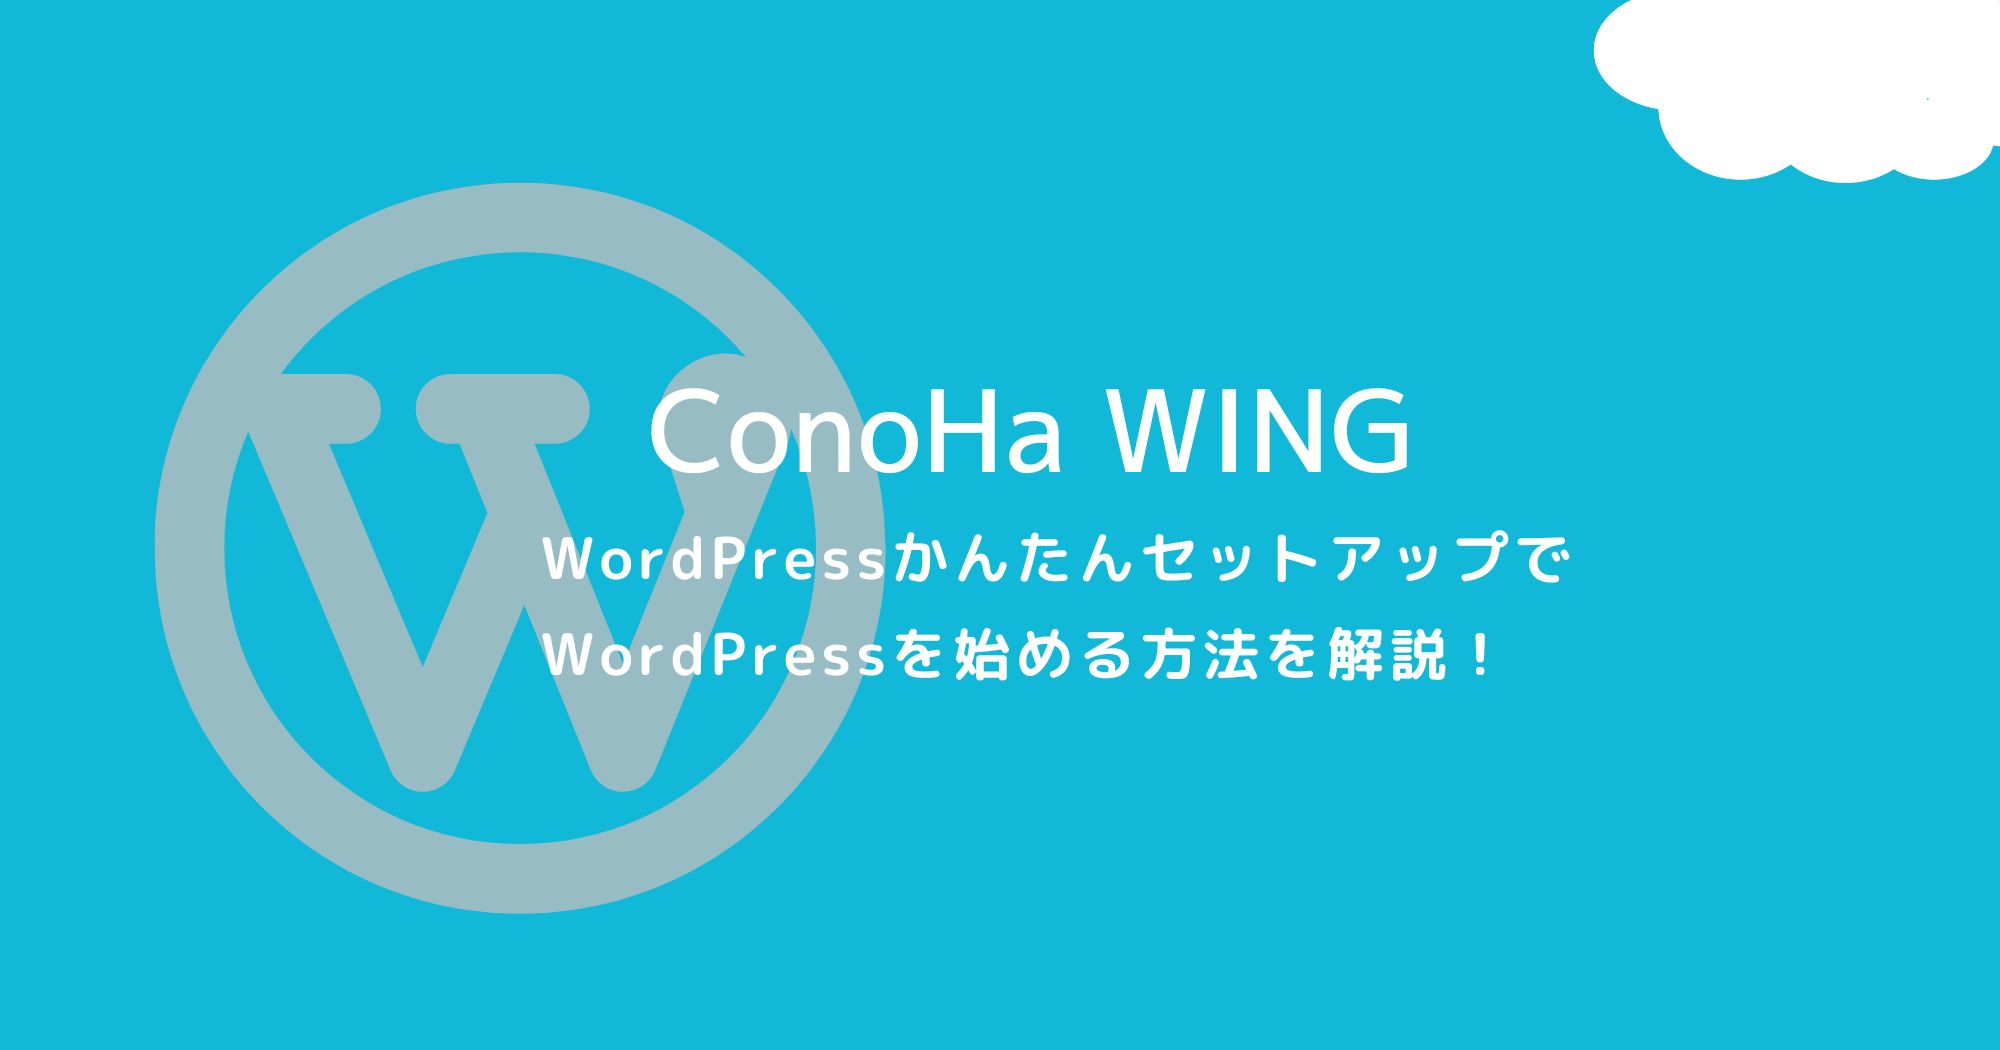 ConoHa WINGでのWordPressの始め方を世界一詳しく解説！【初心者向け】